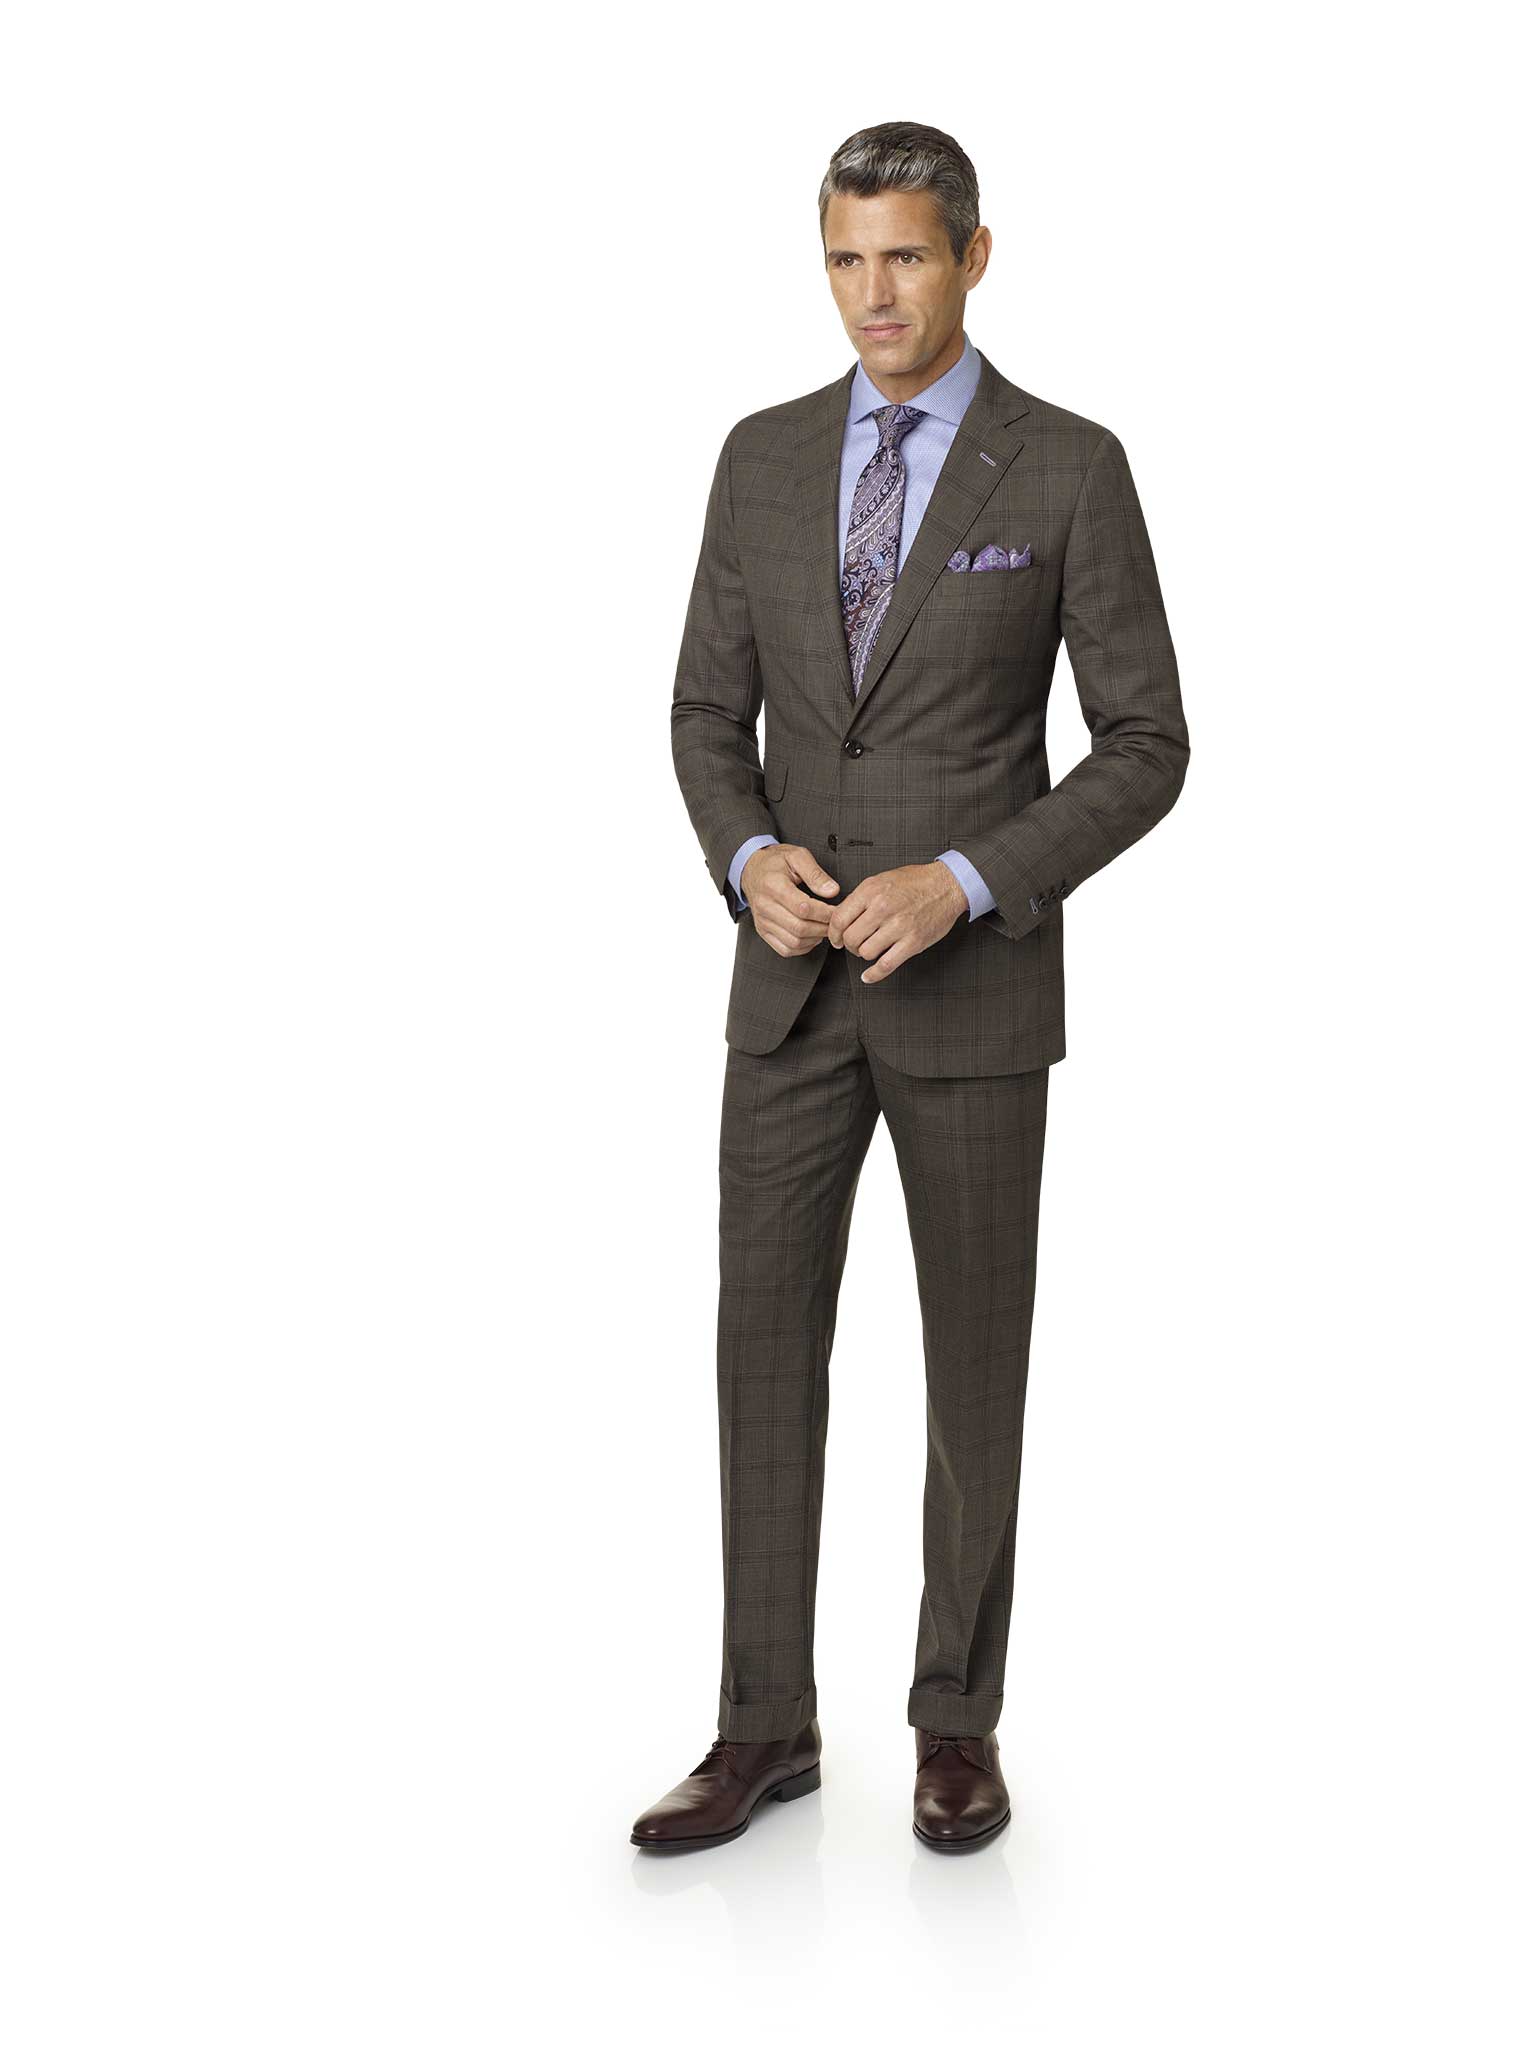 Men's Custom Suits                                                                                                                                                                                                                                        , Brown Plaid Suit